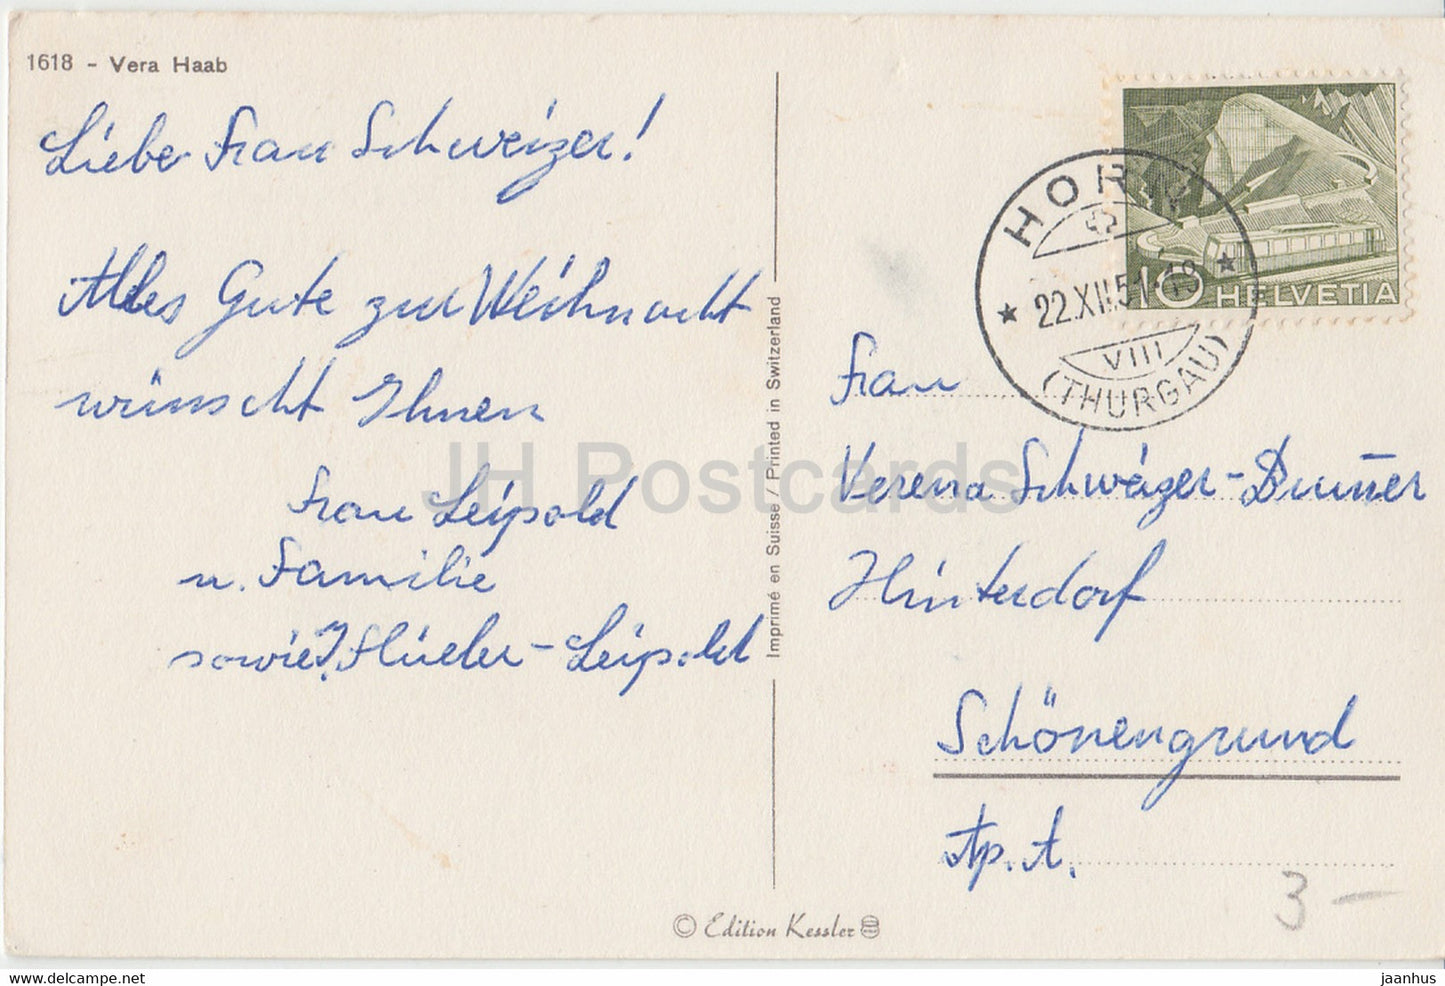 Christmas Greeting Card - Gesegnete Weihnachten - boy - rabbit - Vera Haab - old postcard - 1951 - Switzerland - used